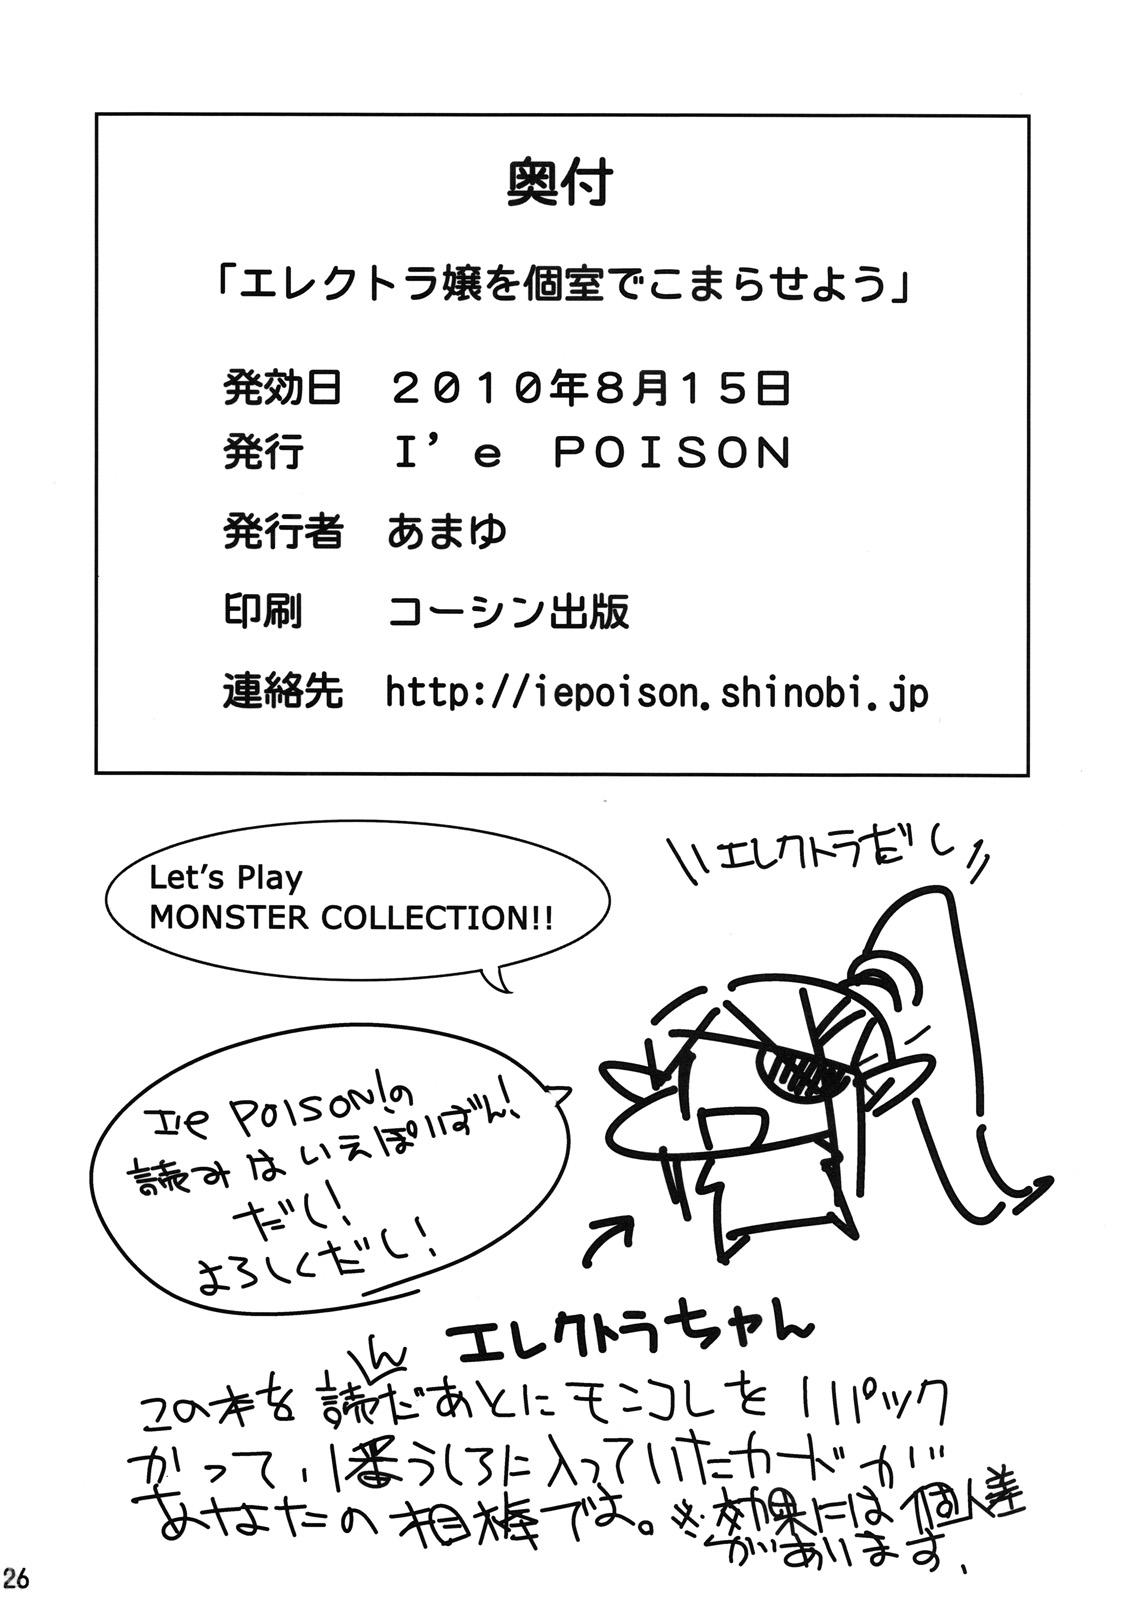 Amigos Electra Jou wo Koshitsu de Komaraseyou! - Monster collection Tattoos - Page 25